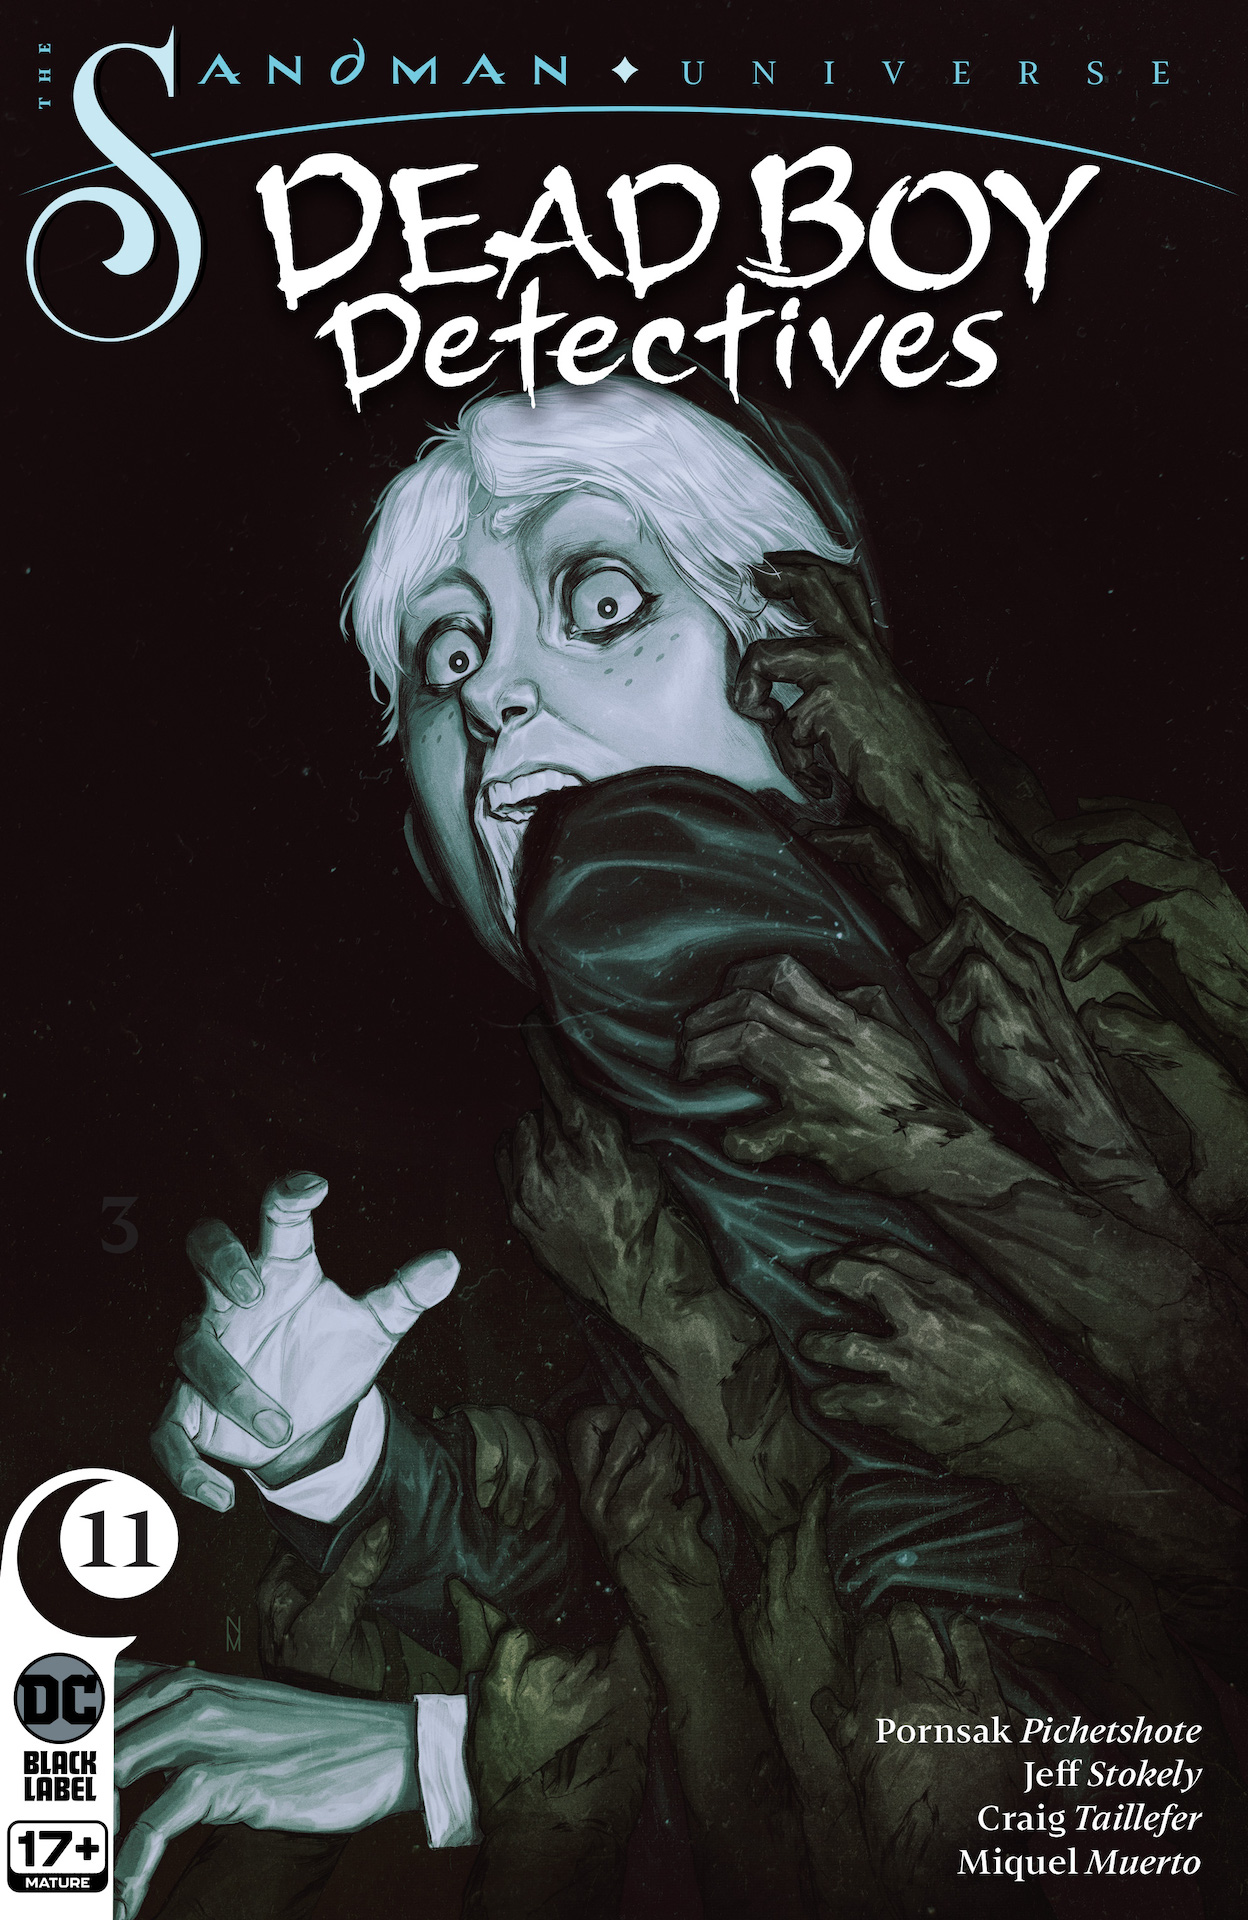 DC Preview: The Sandman Universe: The Dead Boy Detectives #3